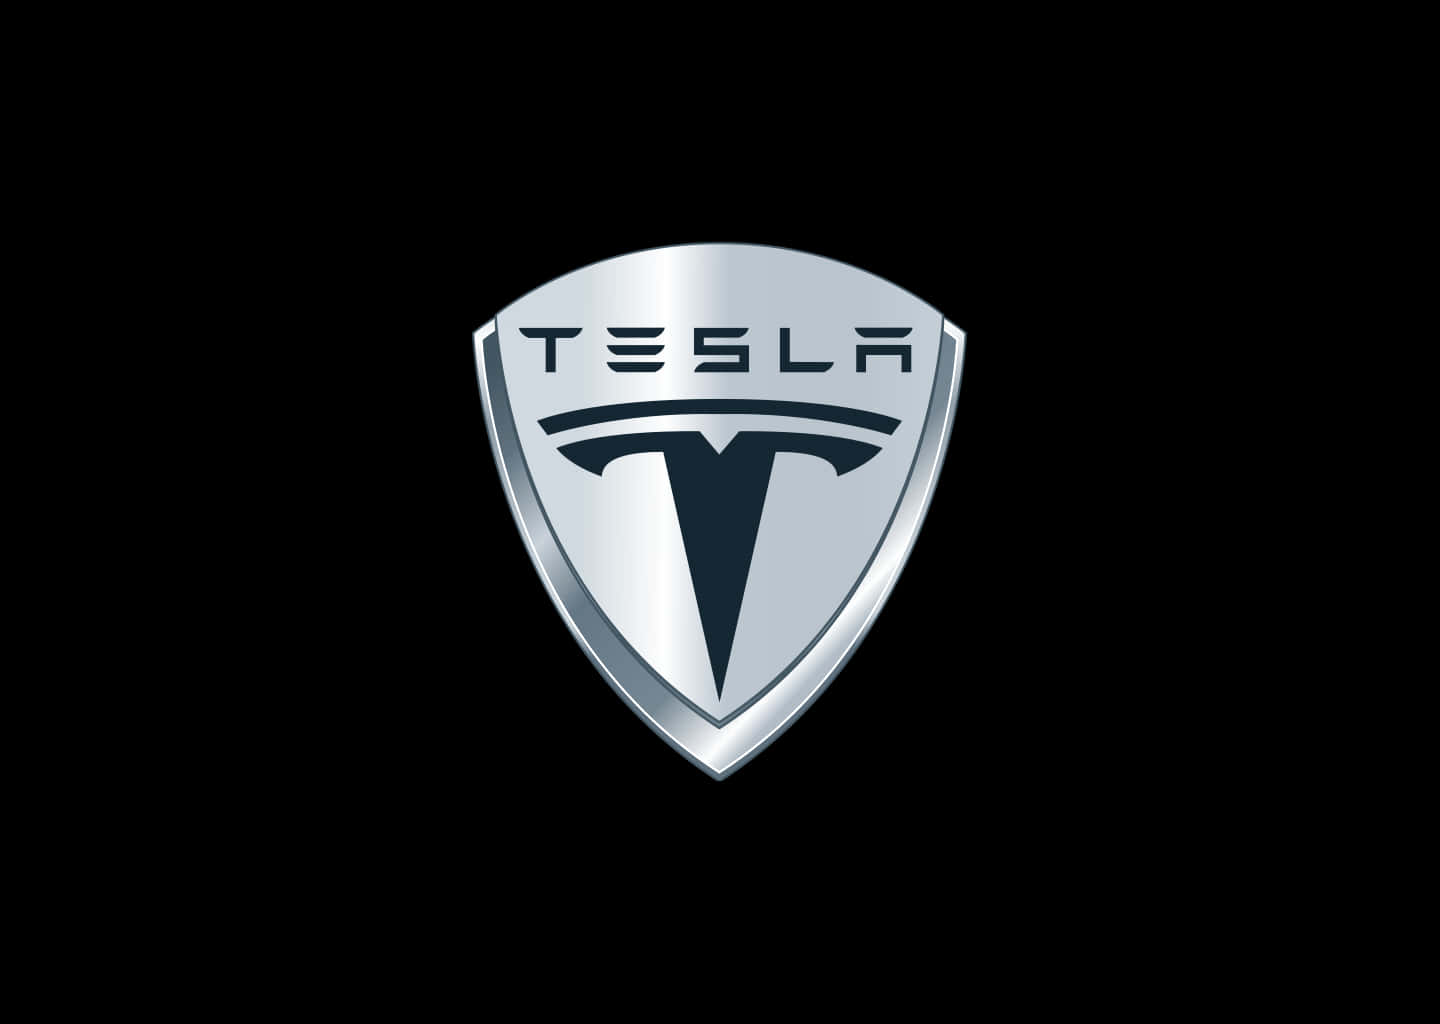 Tesla Logo 1440 X 1024 Wallpaper